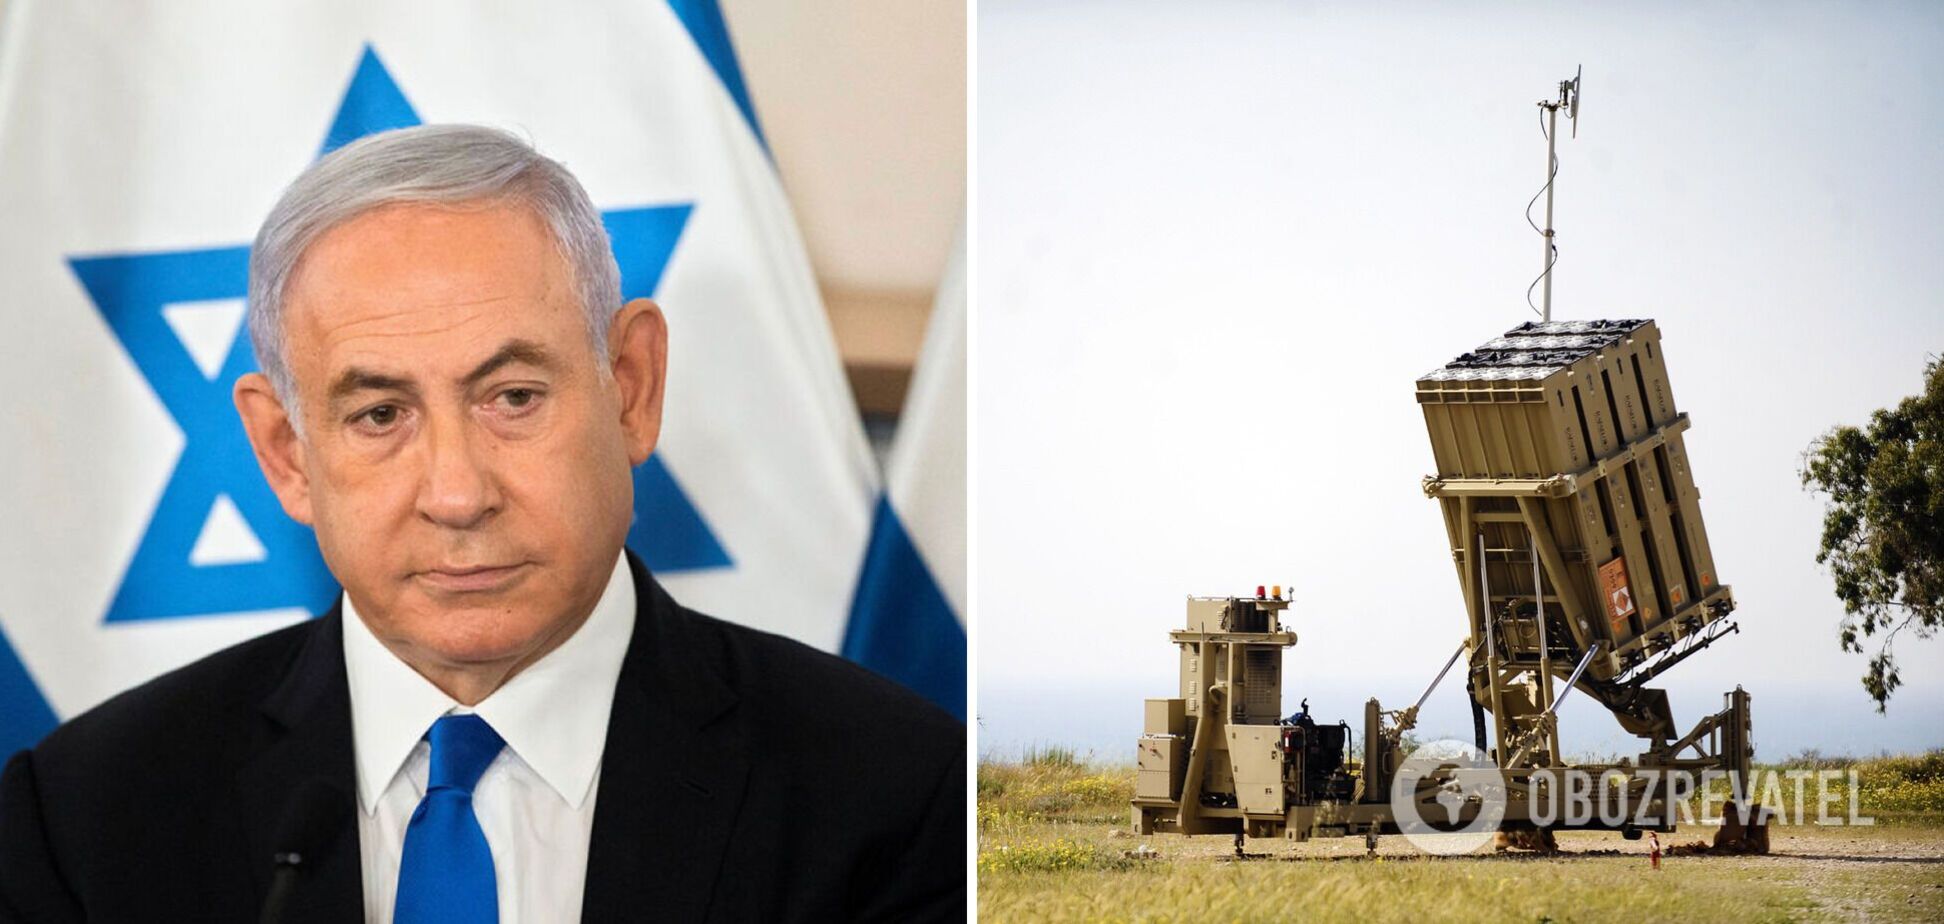 Нетаньяху: Израиль рассматривает возможность передачи Украине 'Железного купола'